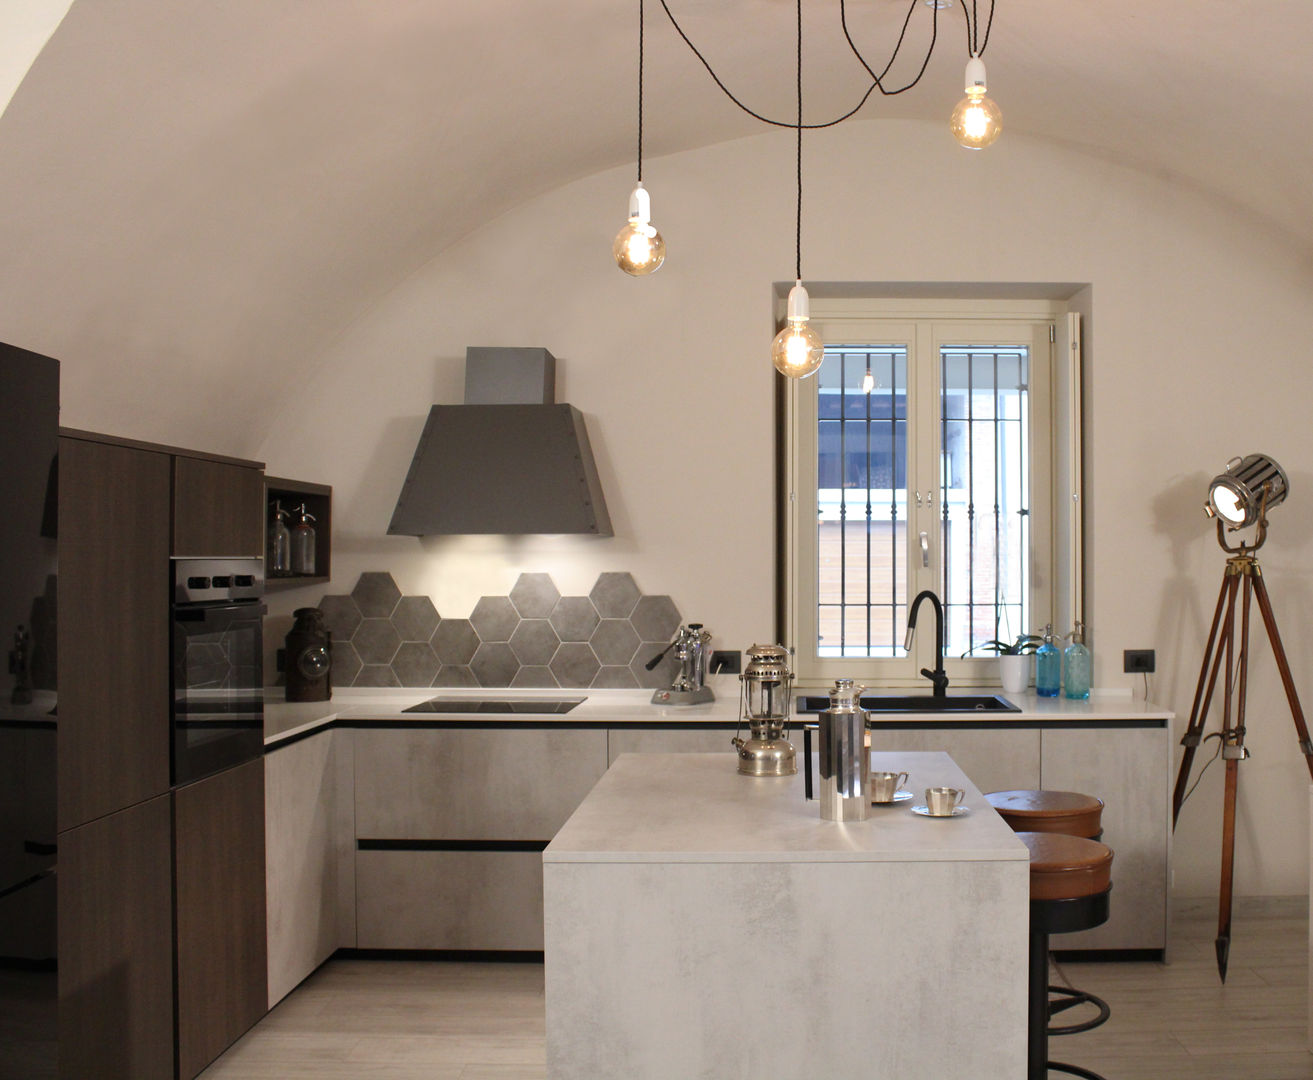 Bristol – Cucina, viemme61 viemme61 Industrial style kitchen Concrete